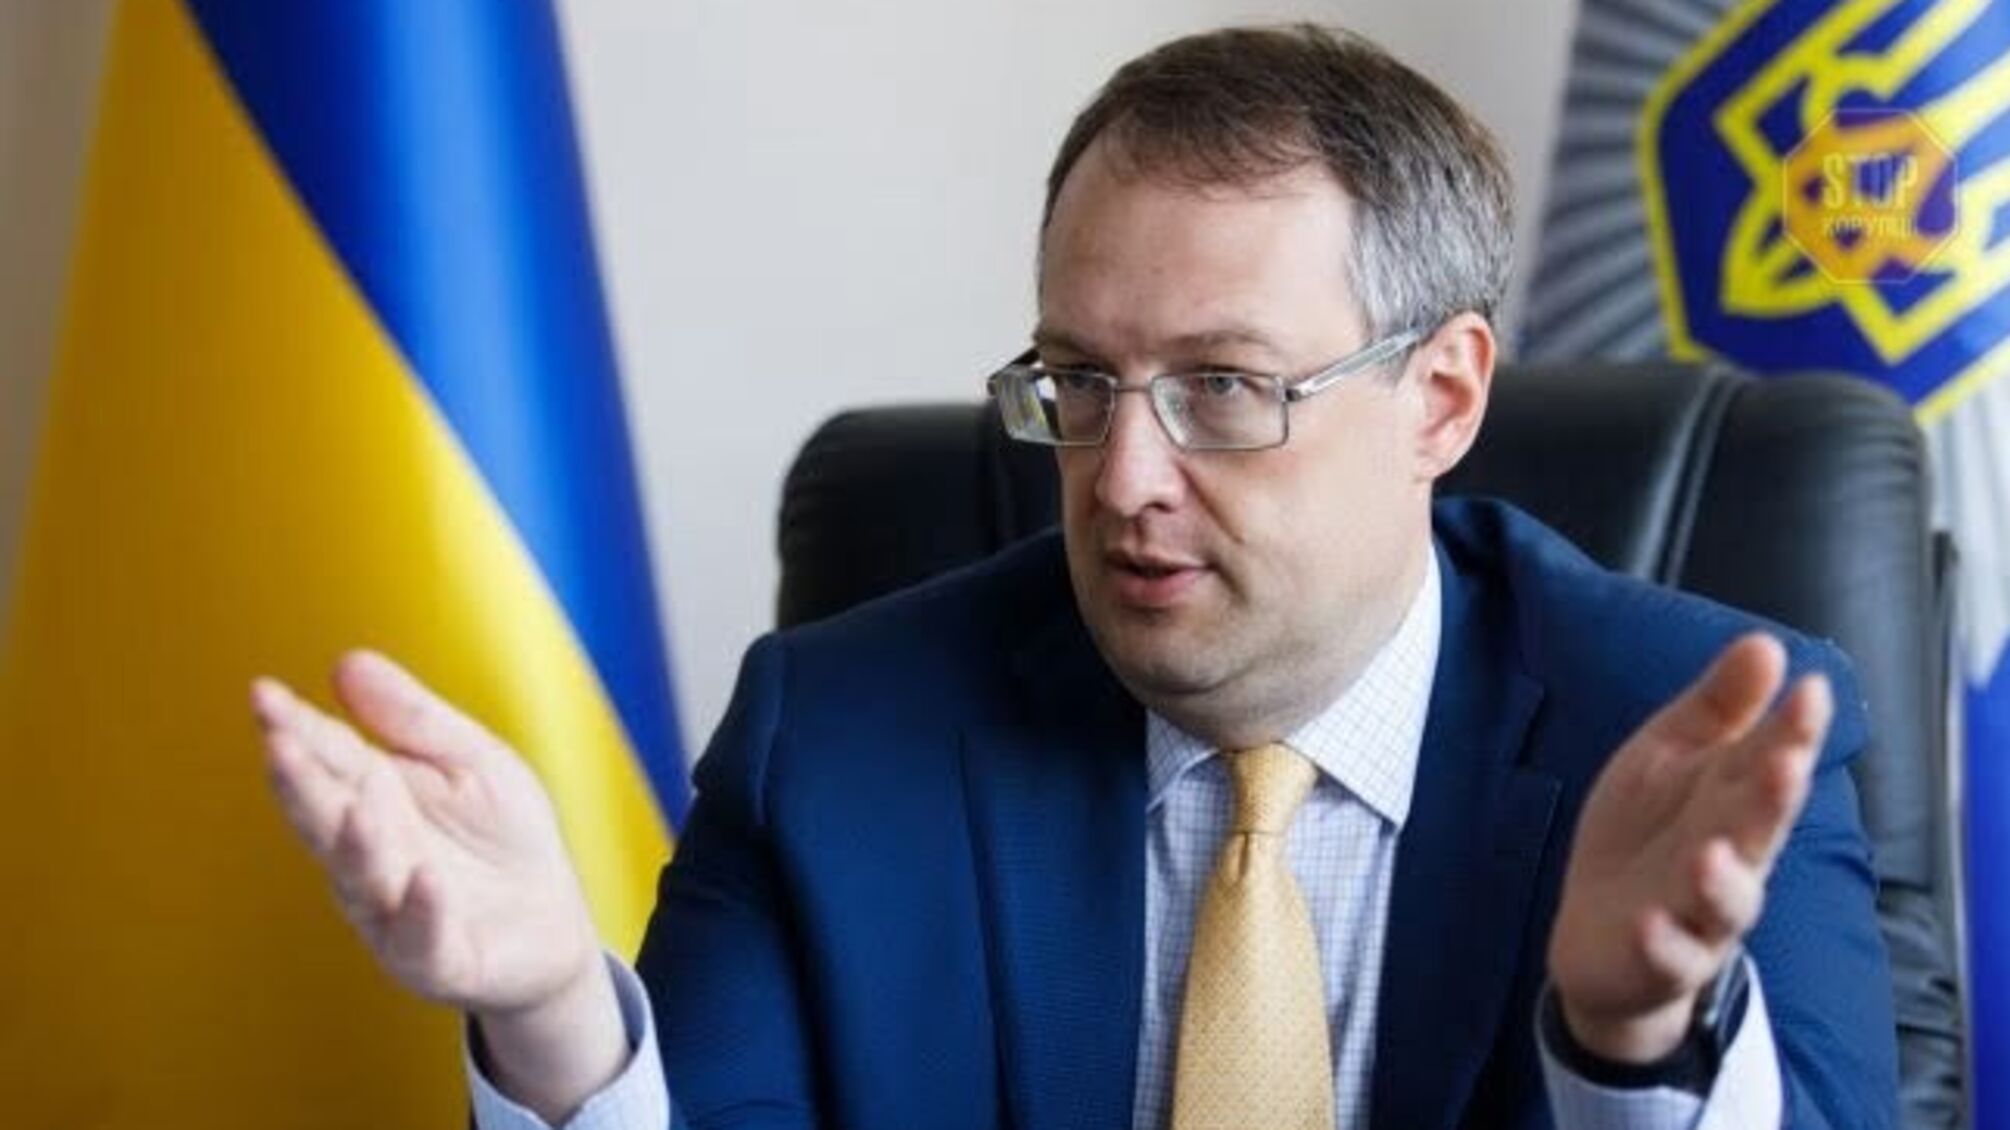 Геращенко: ''Хаос под Офисом президента отвлекает от реальных проблем страны - войны и пандемии''